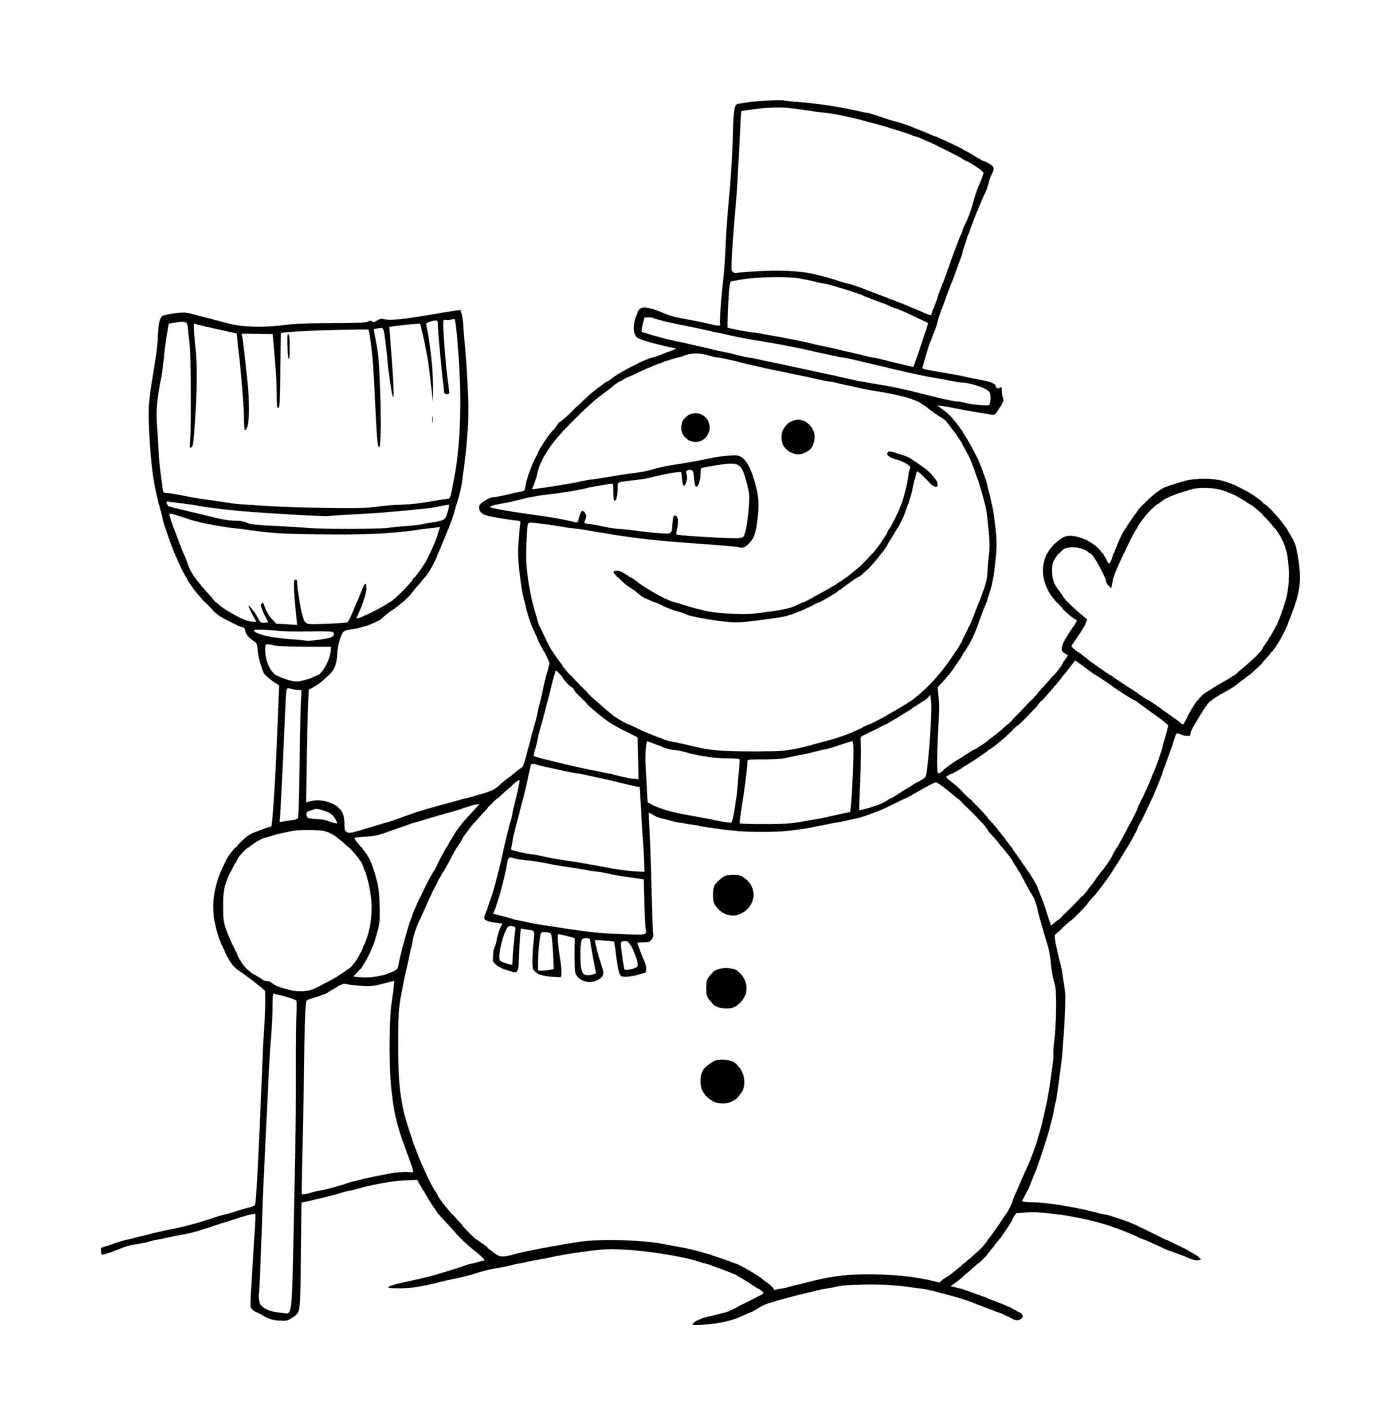  Homem de neve fazendo um cuco feliz 